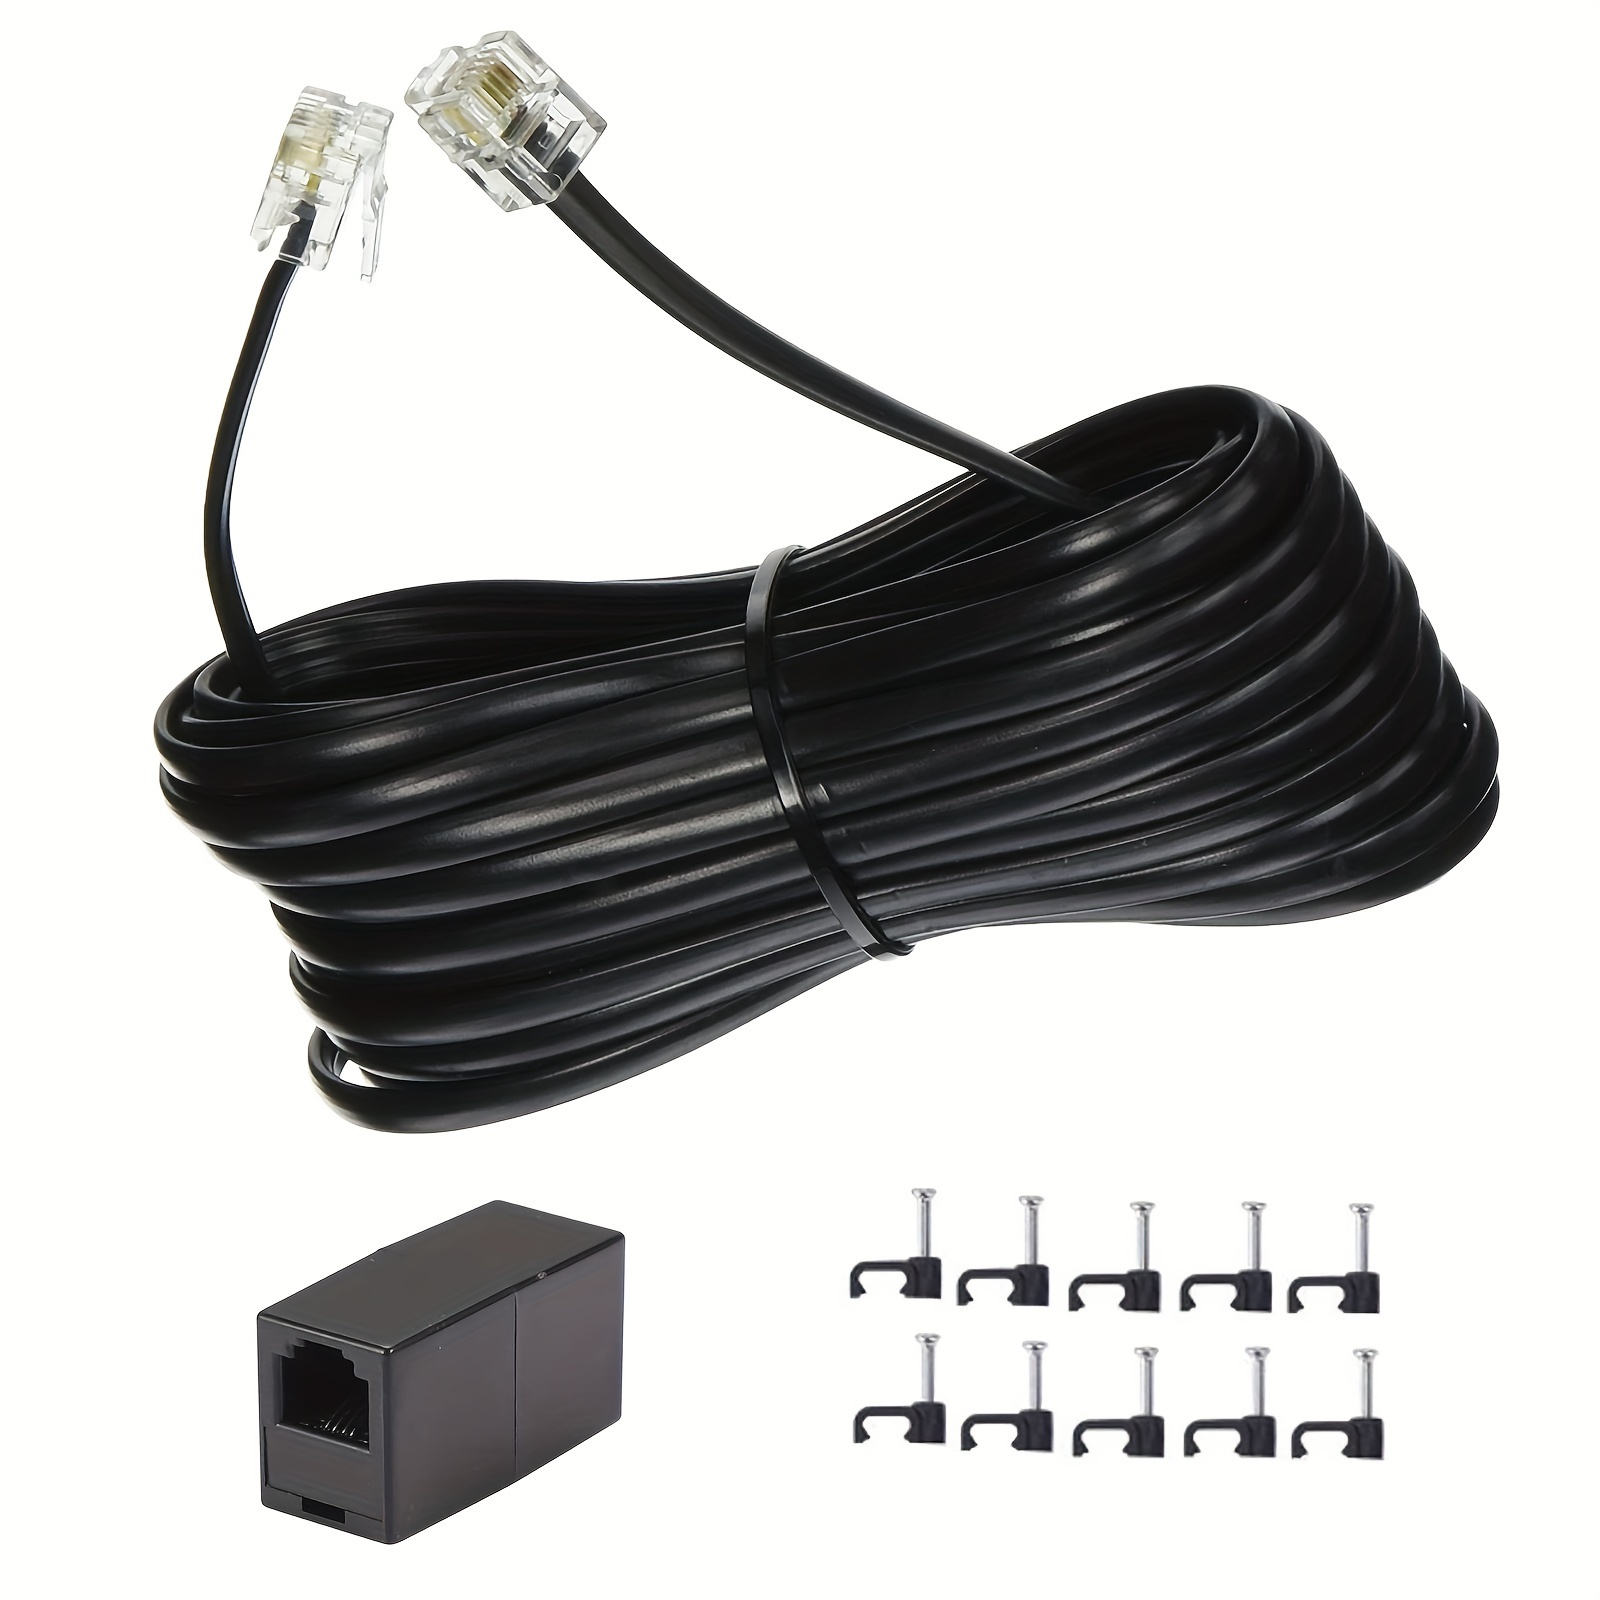 Cable RJ11 a RJ45 de 3.3 ft Cable de teléfono RJ11 6P4C a RJ45 8P8C  Conector Cable de enchufe para teléfono fijo (negro)